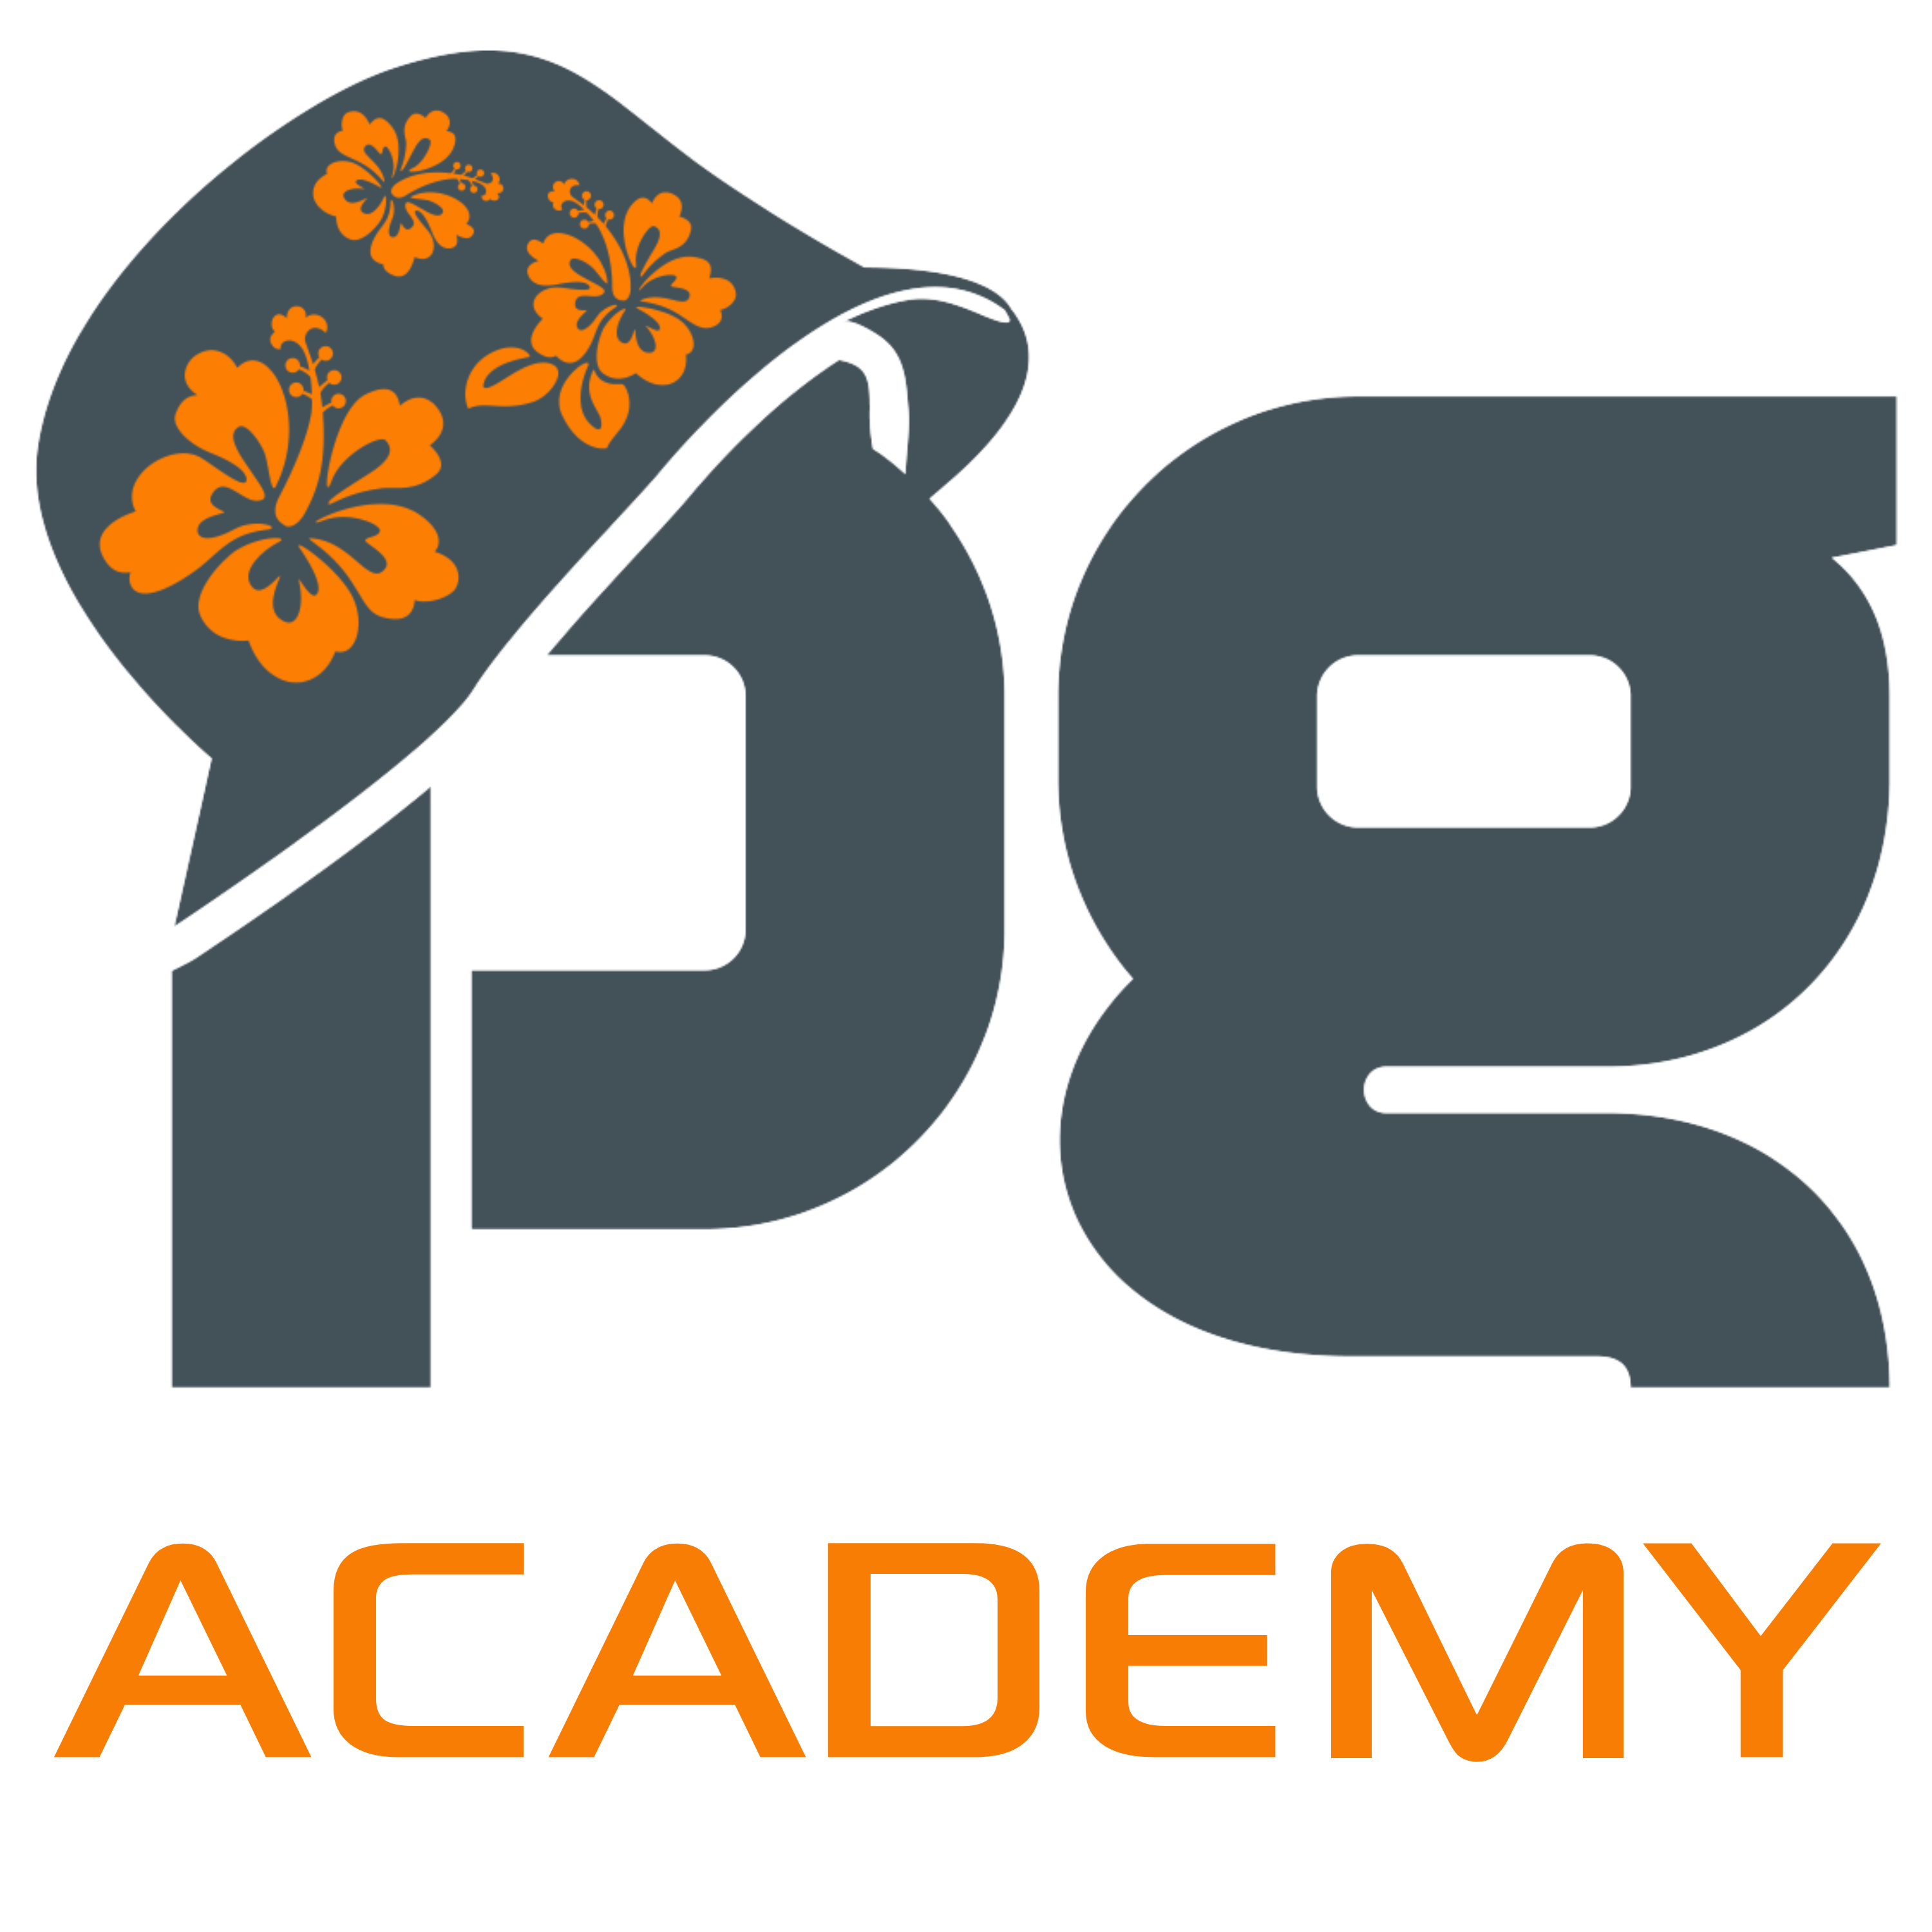 PG Academy